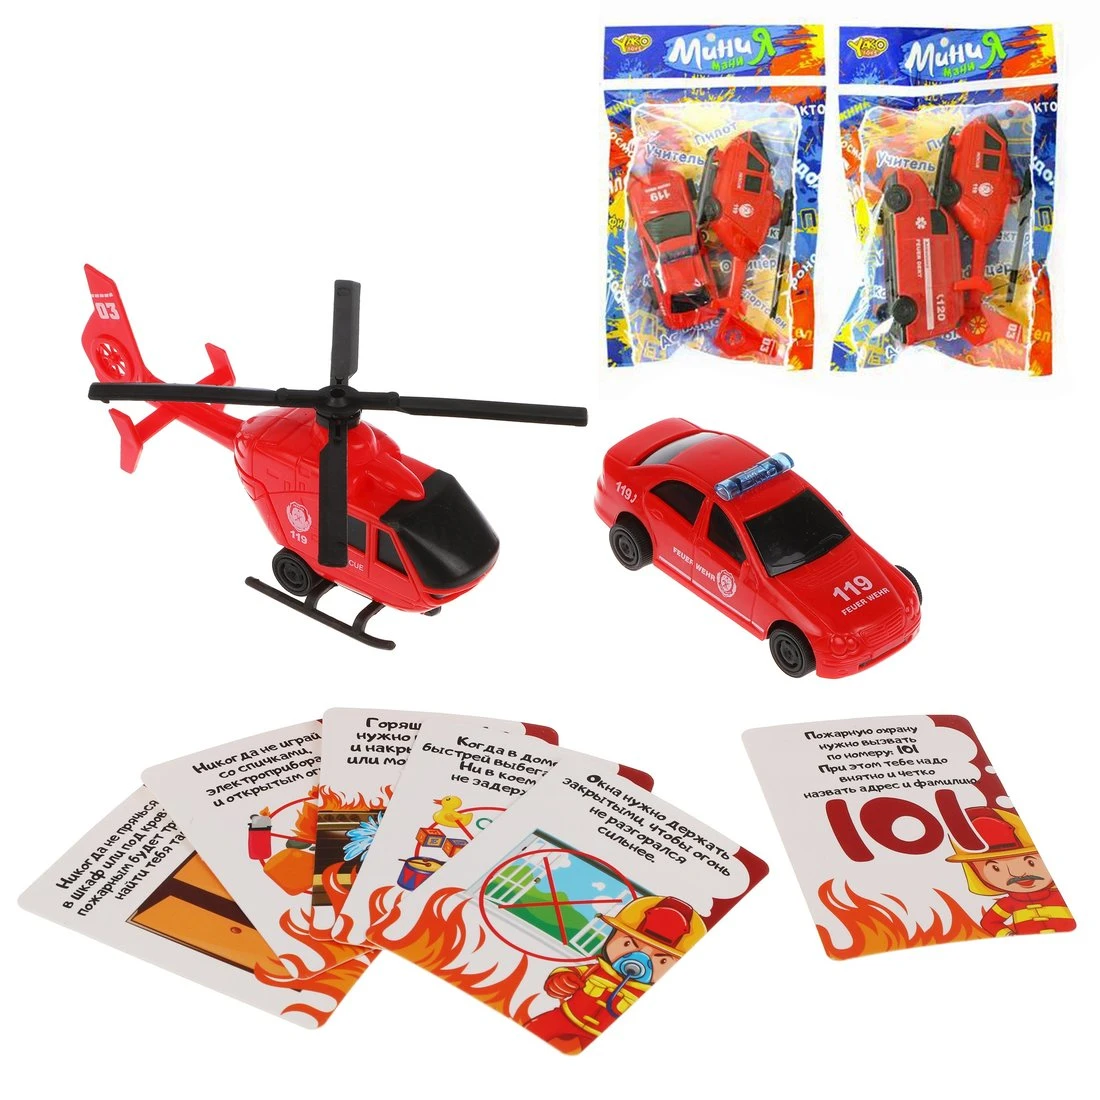 Игровой набор Пожарный, в комплекте: машина инерц., вертолет инерц., карточки